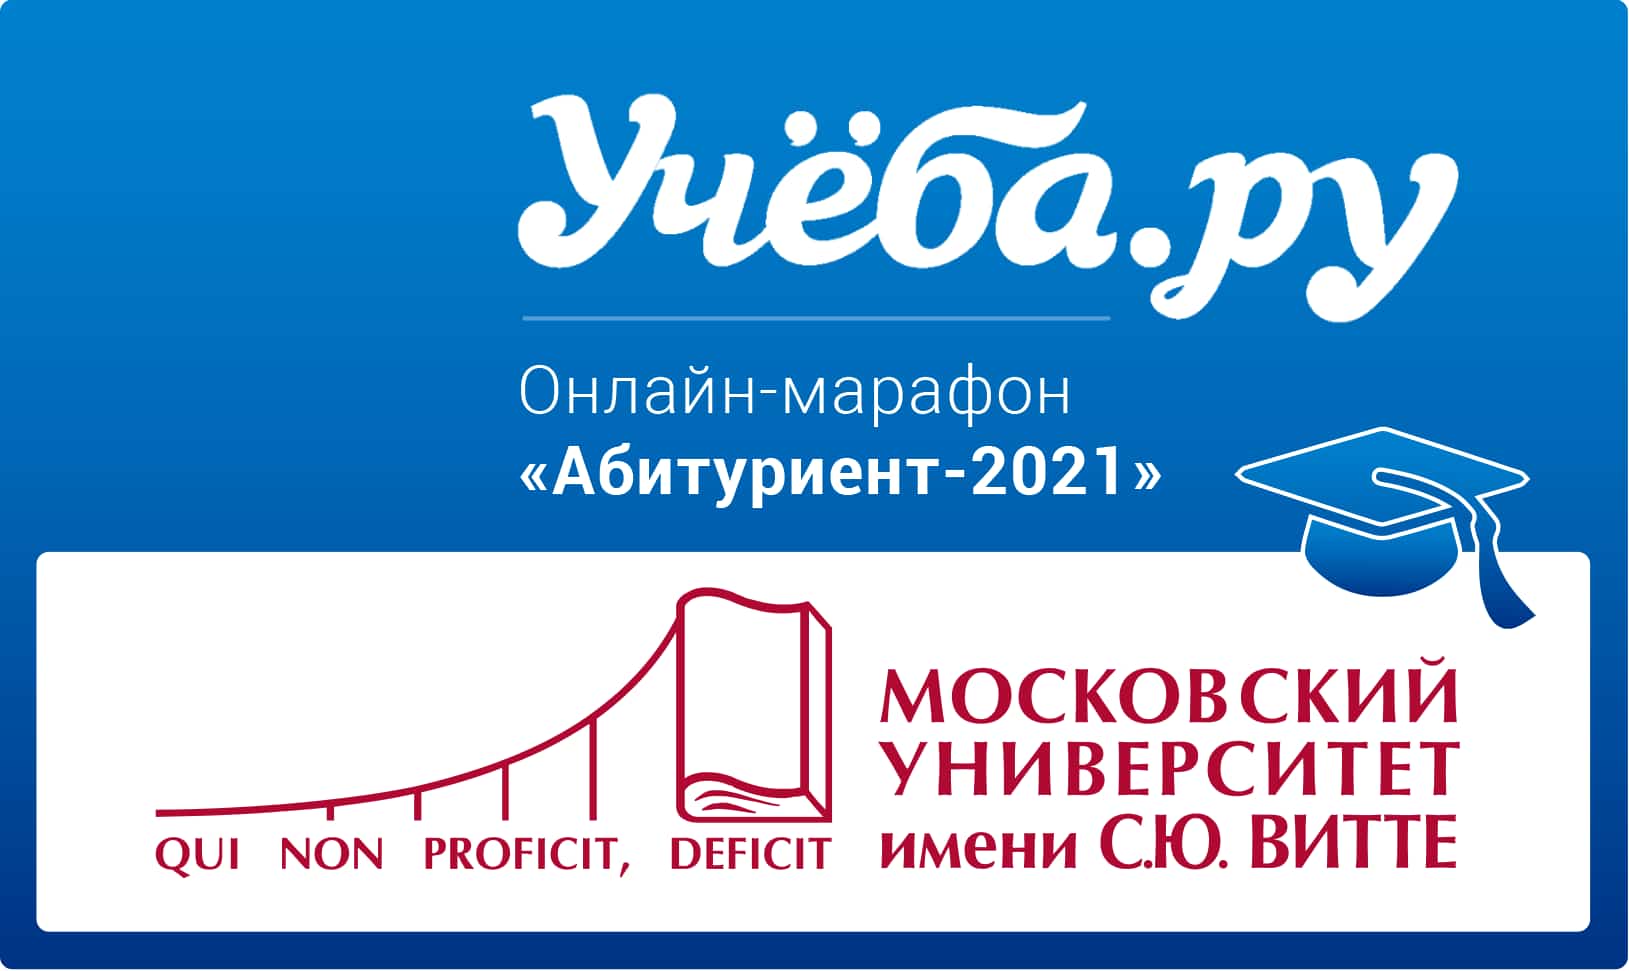 Онлайн-марафон «Абитуриент-2021» - простой и понятный гид по Московскому Университету им. С.Ю.Витте